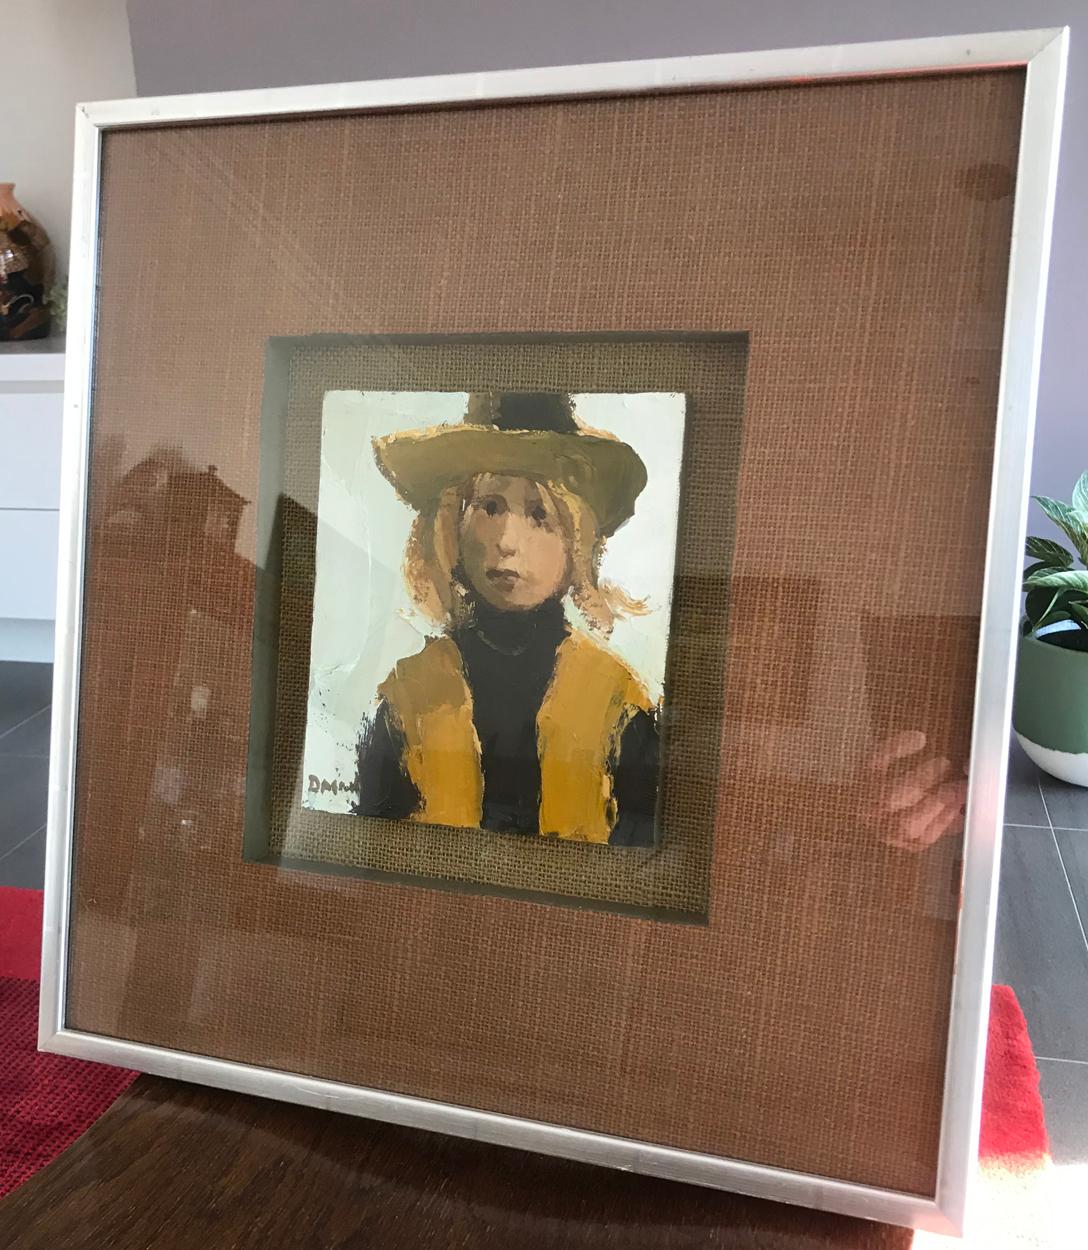 Une peinture de portrait relativement rare, huile sur panneau d'une jeune femme, intitulée Bridie's Hat. Étiquette de la Thackeray Gallery, Kensington, Londres au dos et inscription du nom de l'artiste et du titre de l'œuvre.

Donald Mcintyre est